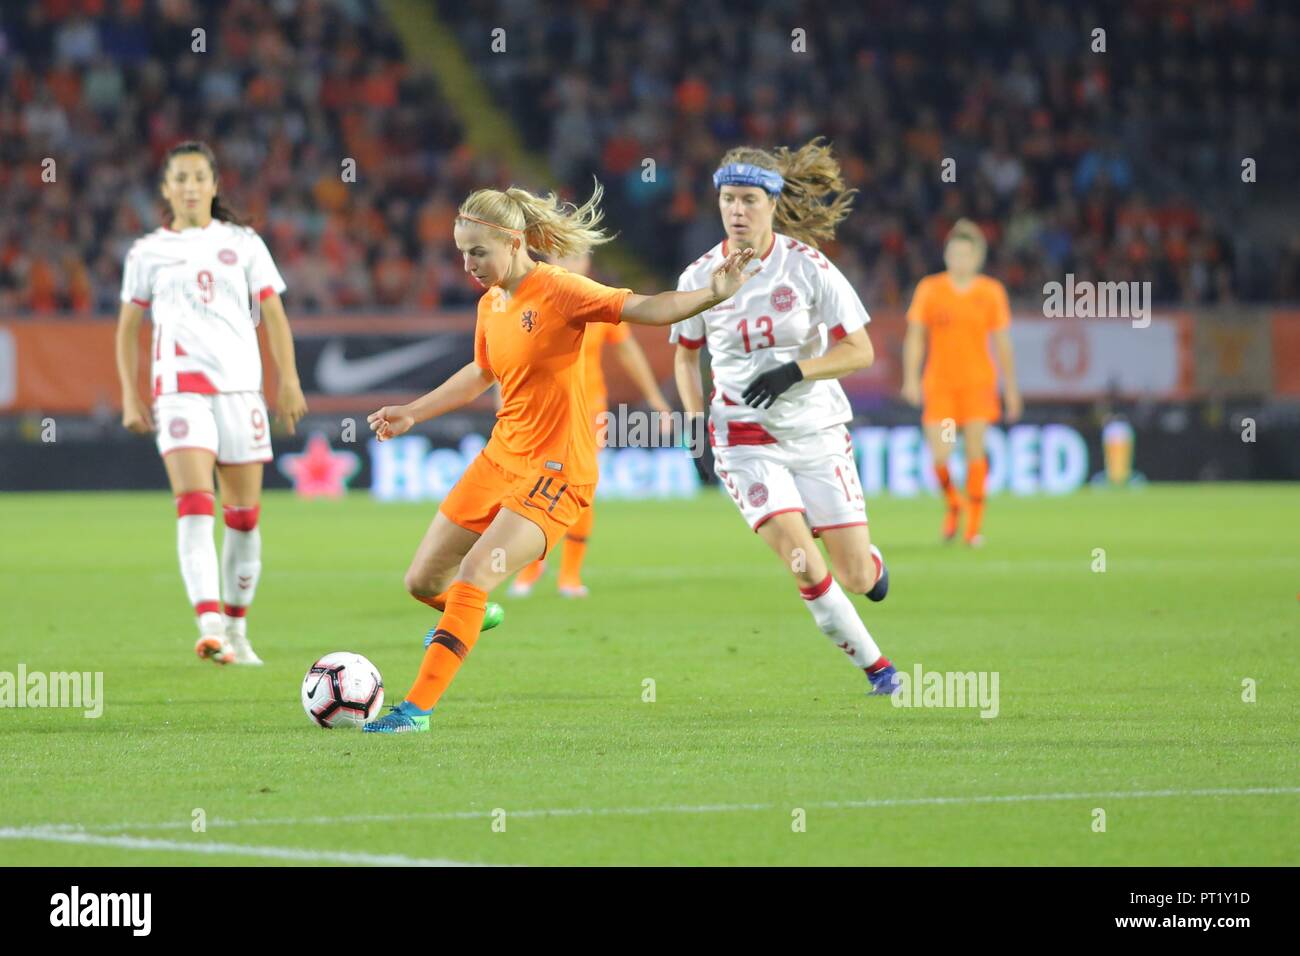 Pays-bas attaquant, Jackie Groenen, s'exécute avec le ballon lors du match contre le Danemark pour la qualification à la coupe du monde de football de femmes, à Breda, 5 octobre 2018. Banque D'Images